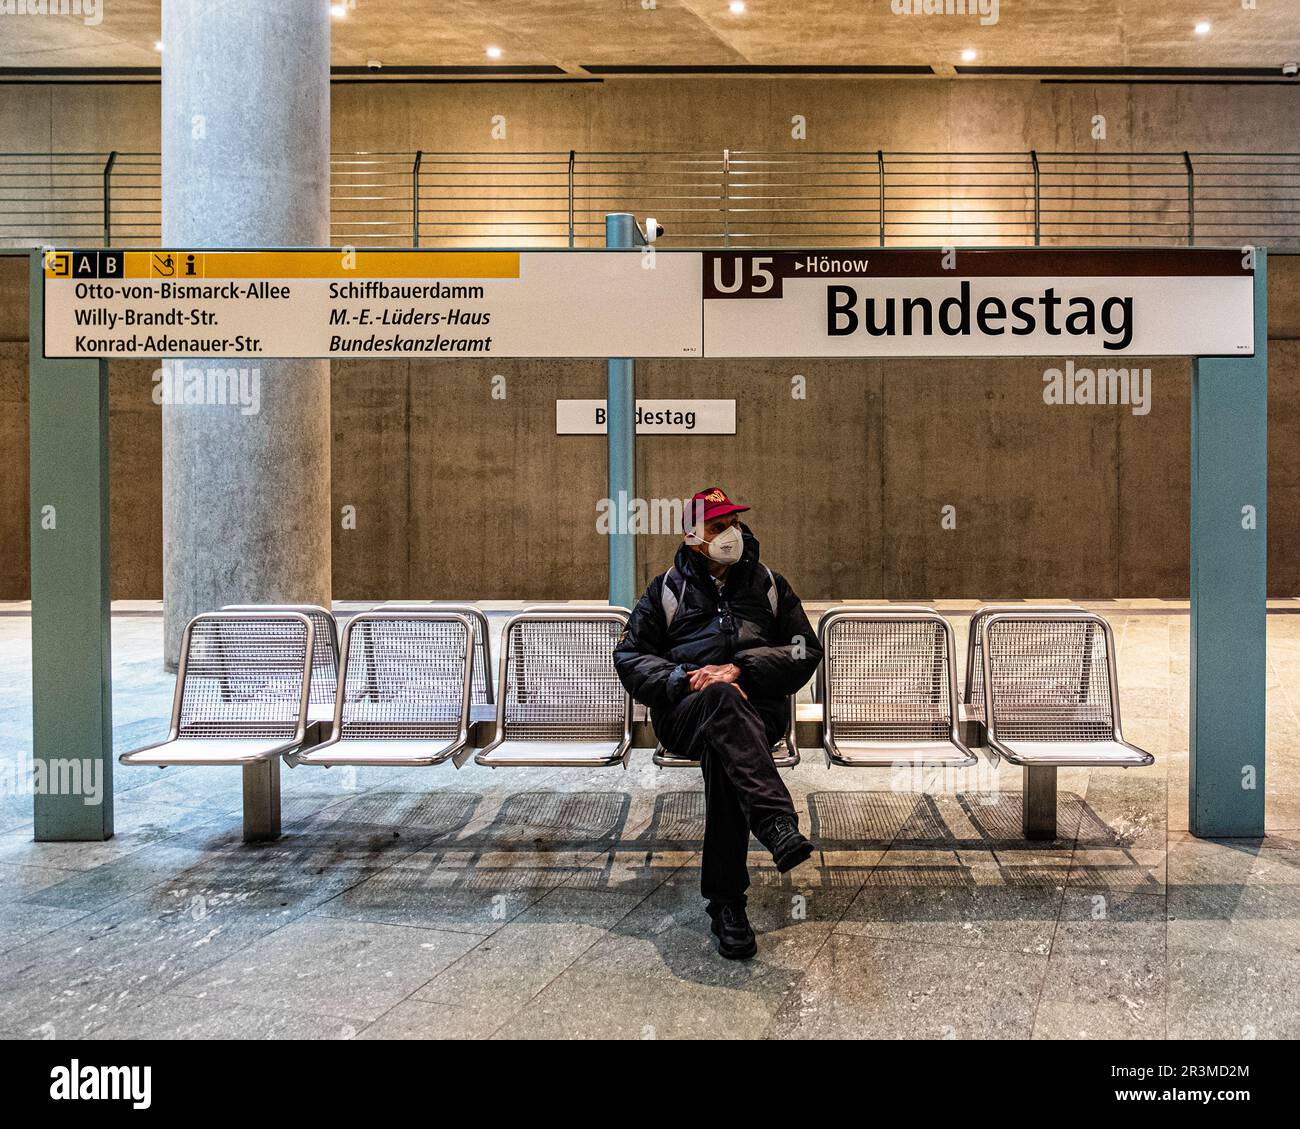 U Bundestag, metropolitana la stazione ferroviaria della U-Bahn, progettata dall'architetto Axel Schultes, serve la linea U5 ed è stata inaugurata il 8 agosto 2009 a Tiergarten-Mitte, Berlino Foto Stock